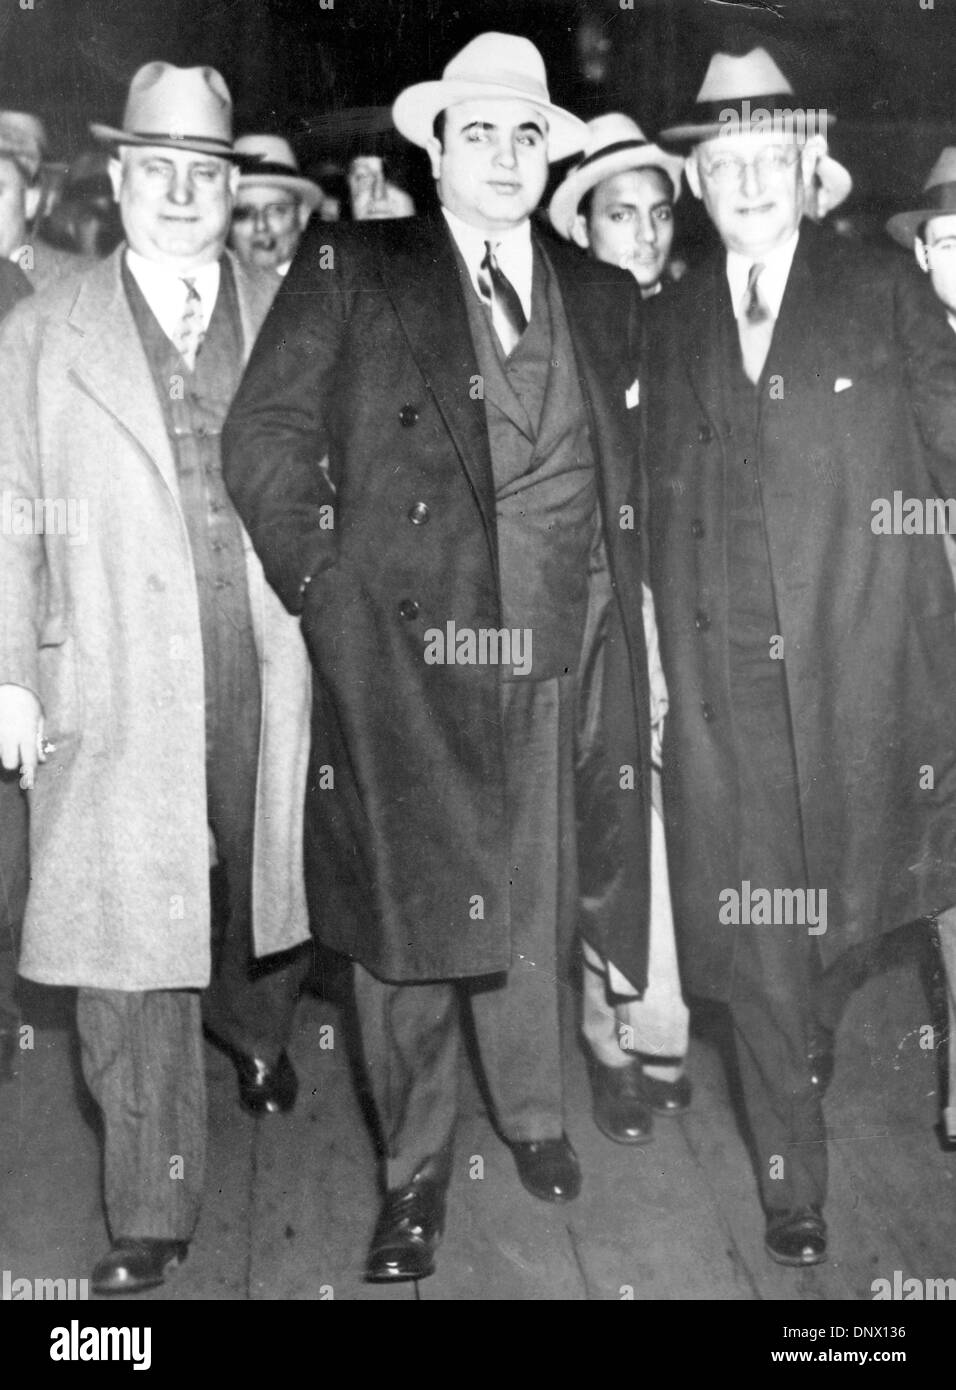 14. Mai 1929 - New York, NY, US - AL CAPONE (C) mit MARSHALL LAUBENHEIMER (R) in New York. Al Capone ist Amerikas bekanntesten Gangster und das einzelne wichtigste Symbol für den Zusammenbruch von Recht und Ordnung in den Vereinigten Staaten während der 1920er Jahre Verbot Ära. Capone hatte eine führende Rolle in der illegalen Aktivitäten, die Chicago seinen Ruf als eine gesetzlose Stadt verliehen.  (Kredit-Bild: © ein Stockfoto